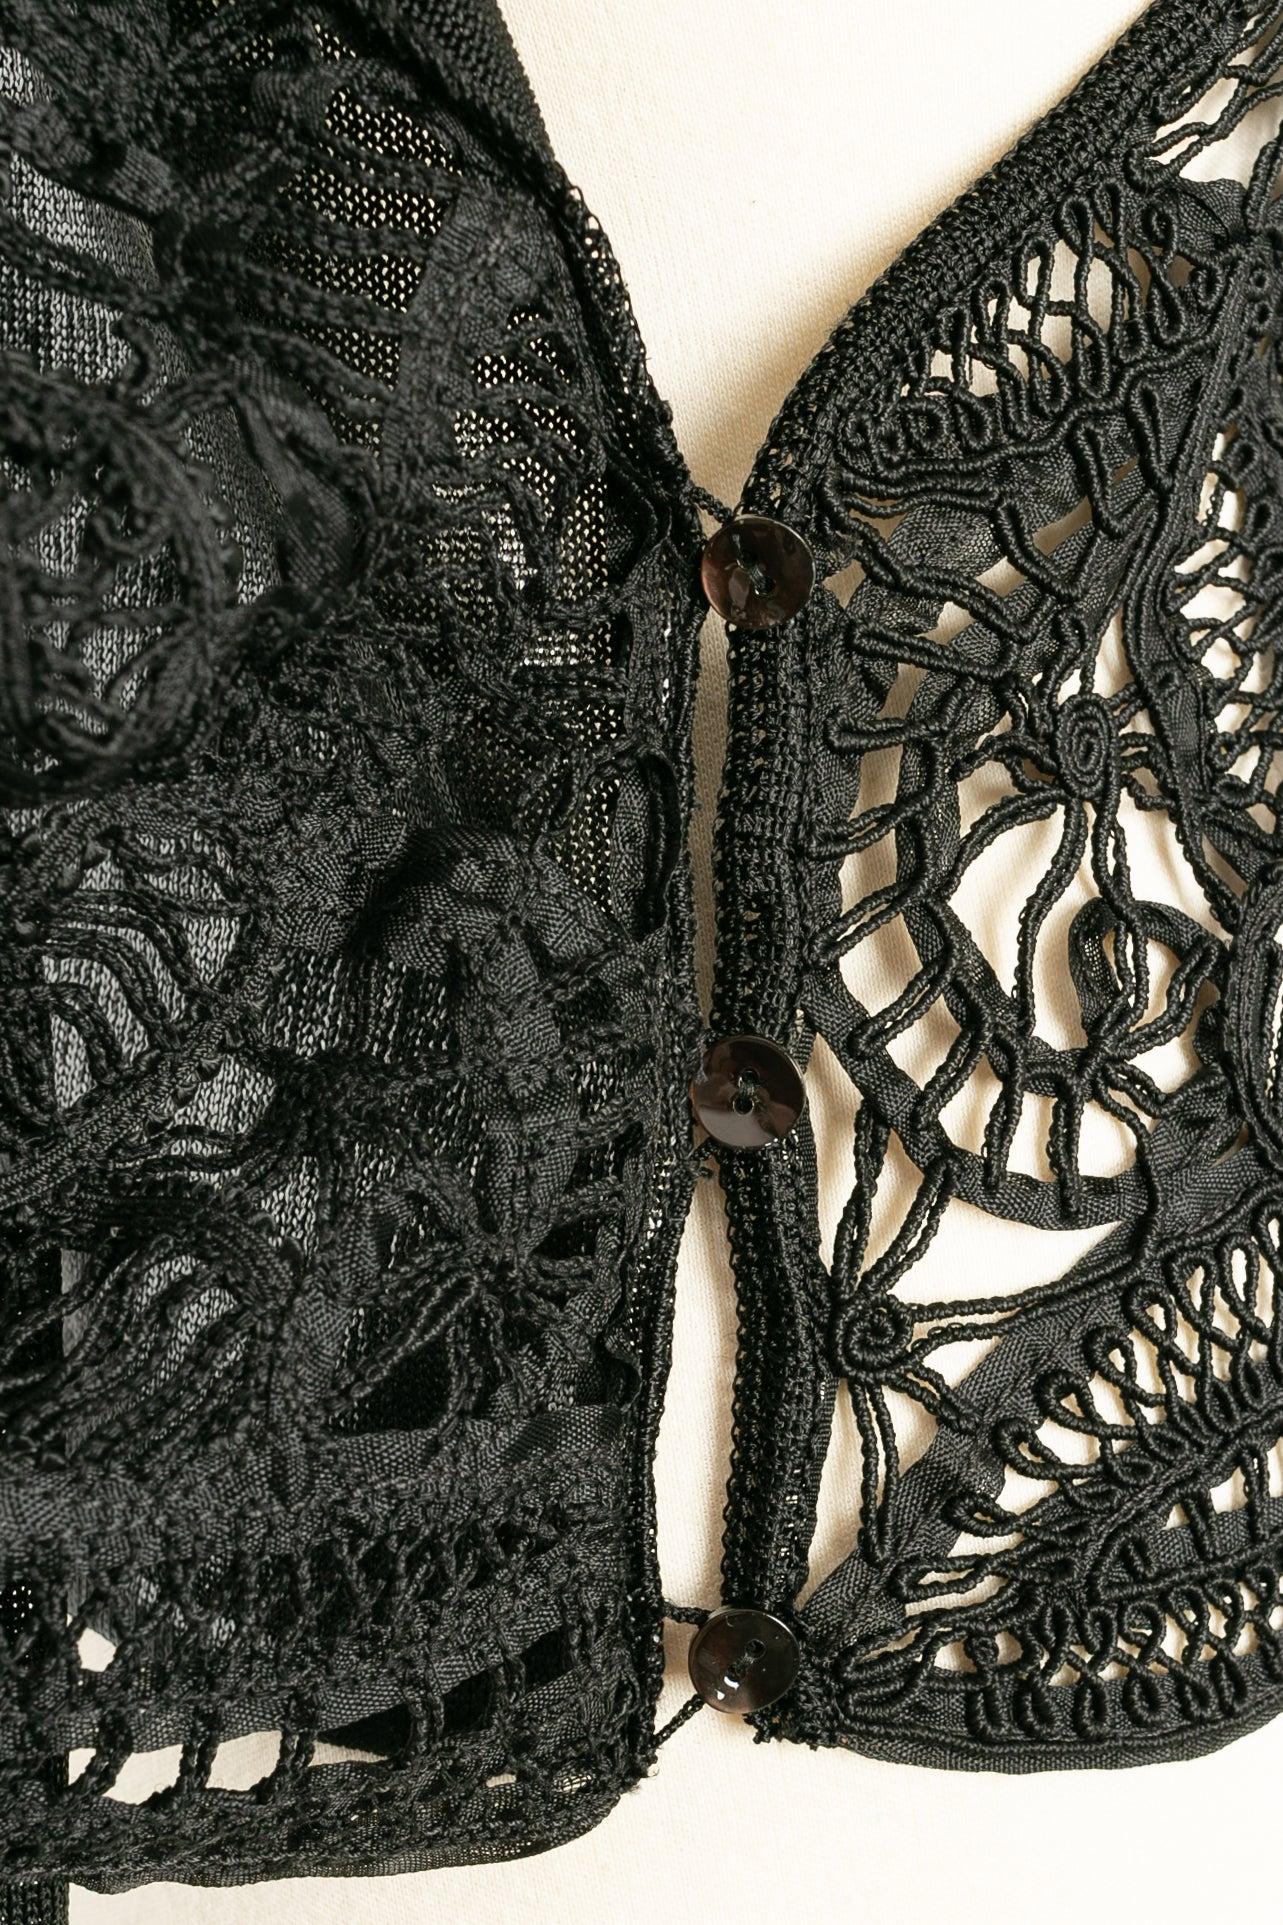 John Galliano Knit Wrap Top in Lace-Like Crochet For Sale 2